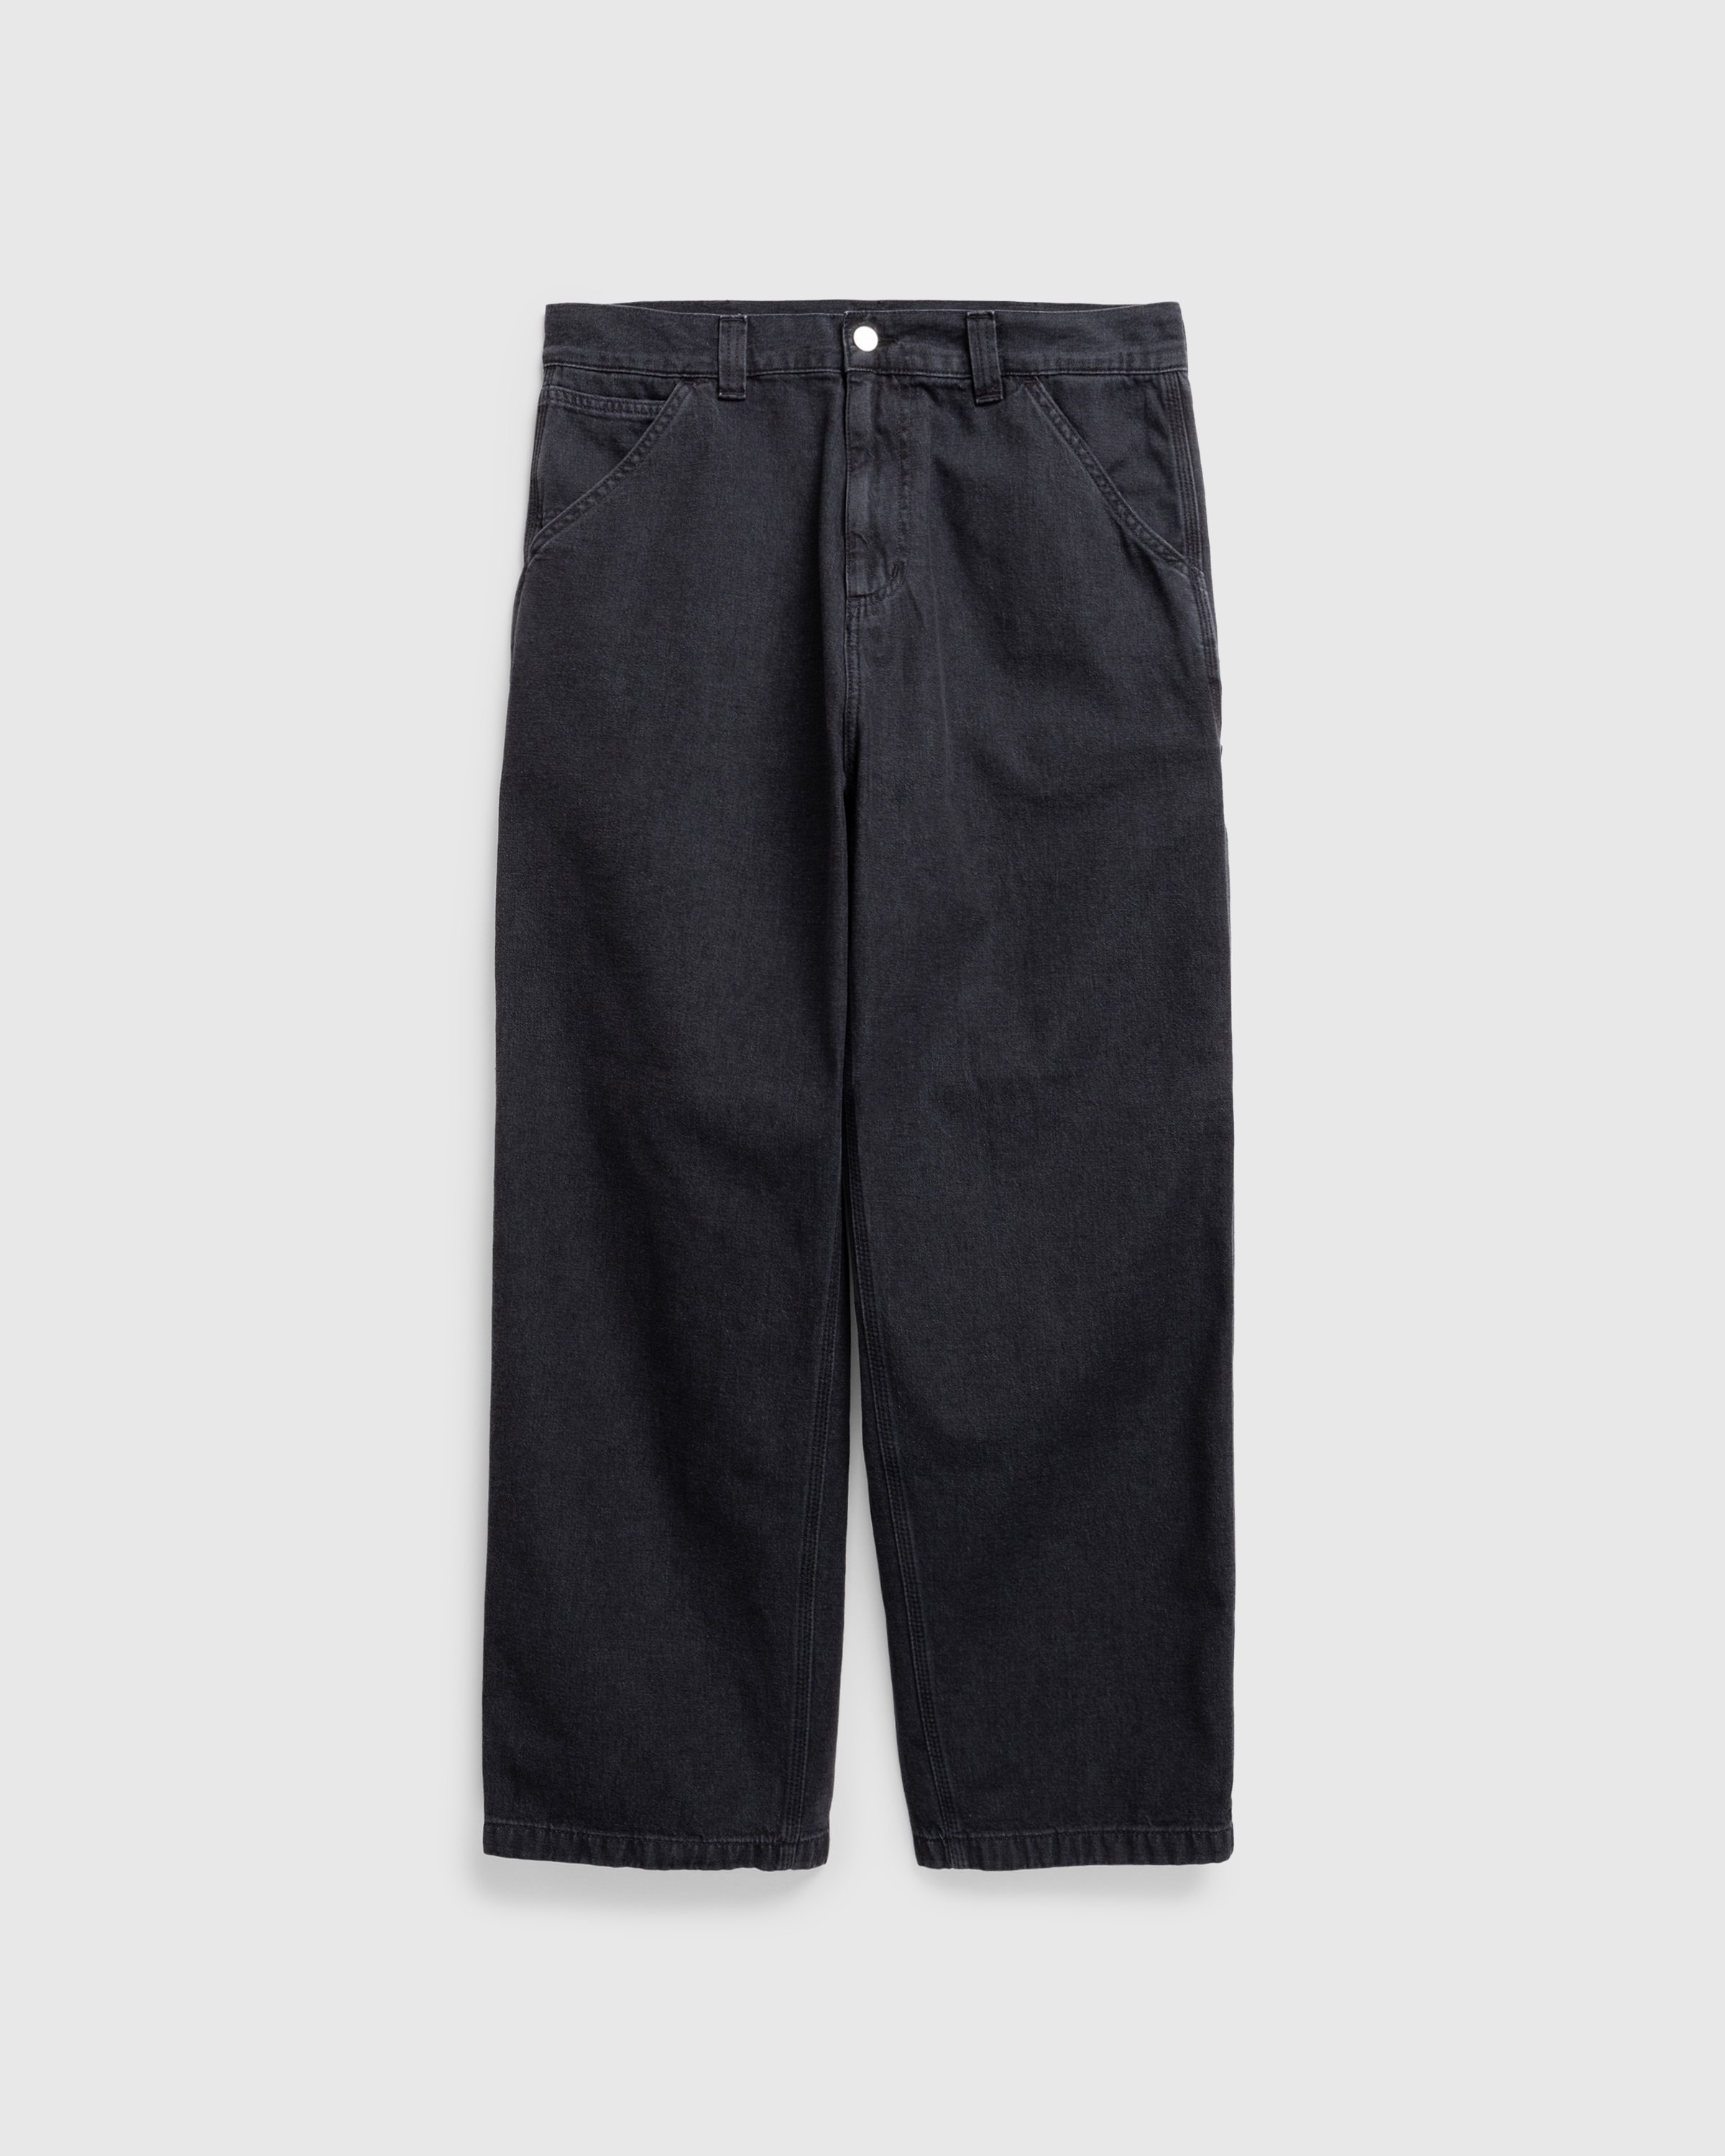 Carhartt WIP - OG Single Knee Pant Black /stone washed - Clothing - Black - Image 1